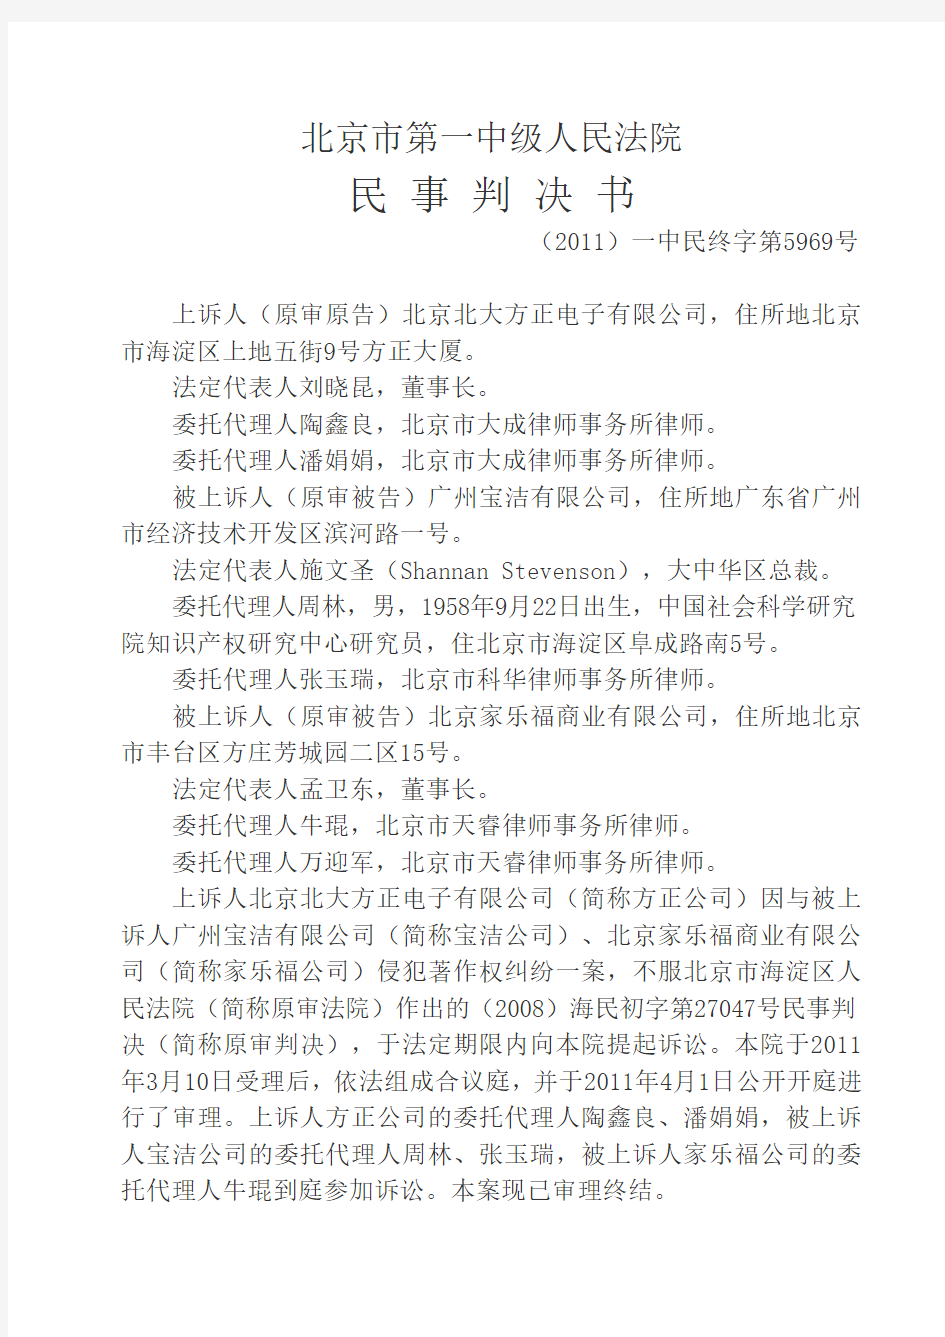 2011-07-05-北大方正诉广州宝洁倩体字著作权侵权案二审判决书